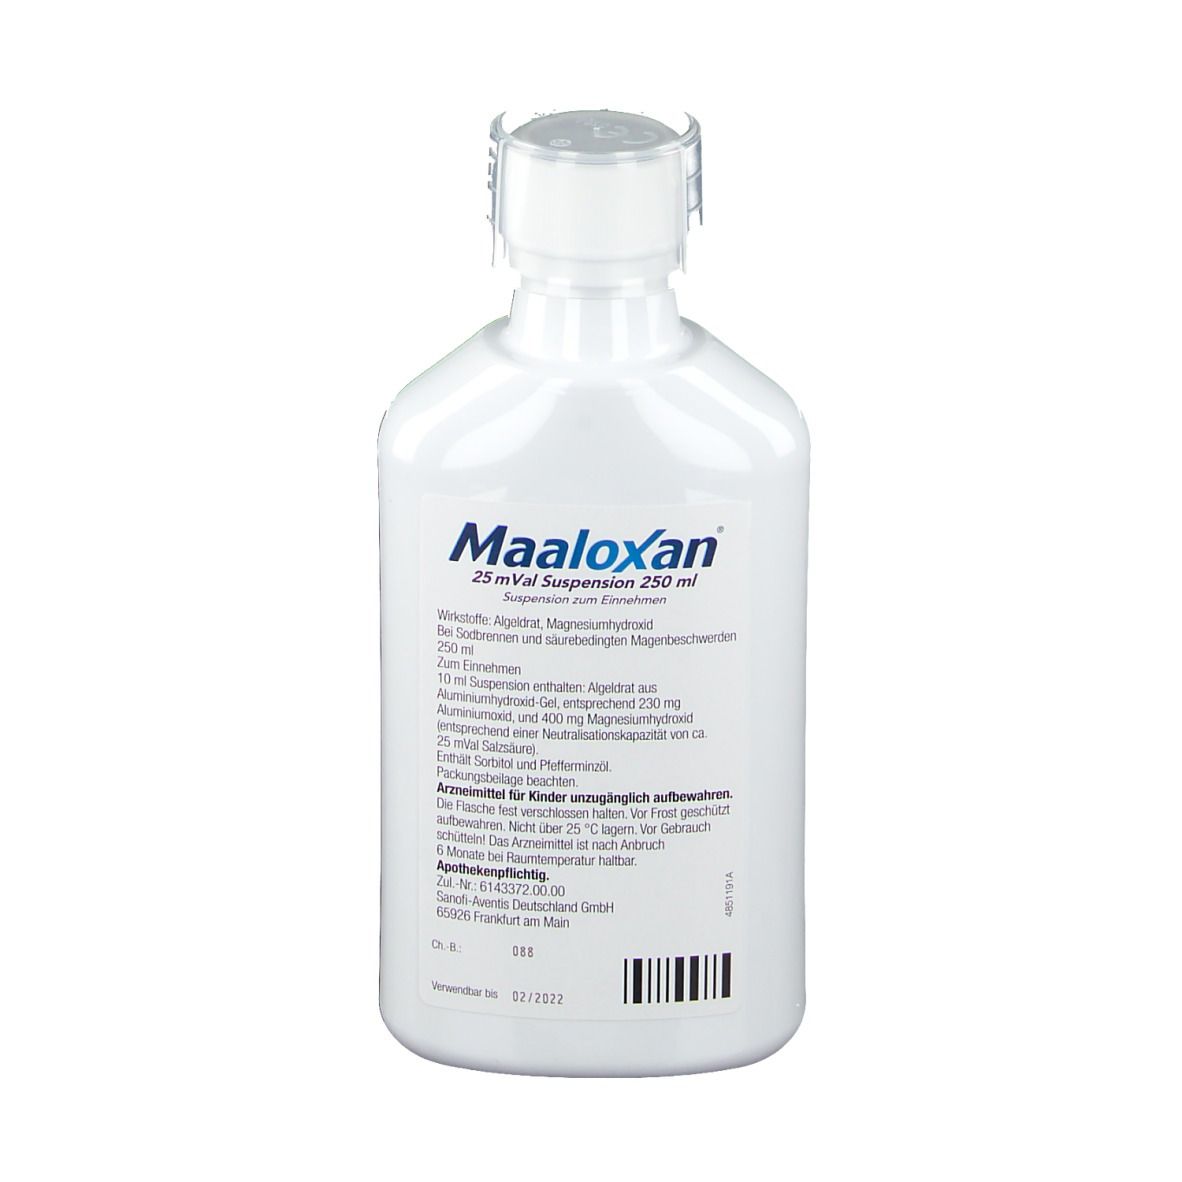 Maaloxan®  Suspension bei Sodbrennen mit Magenschmerzen